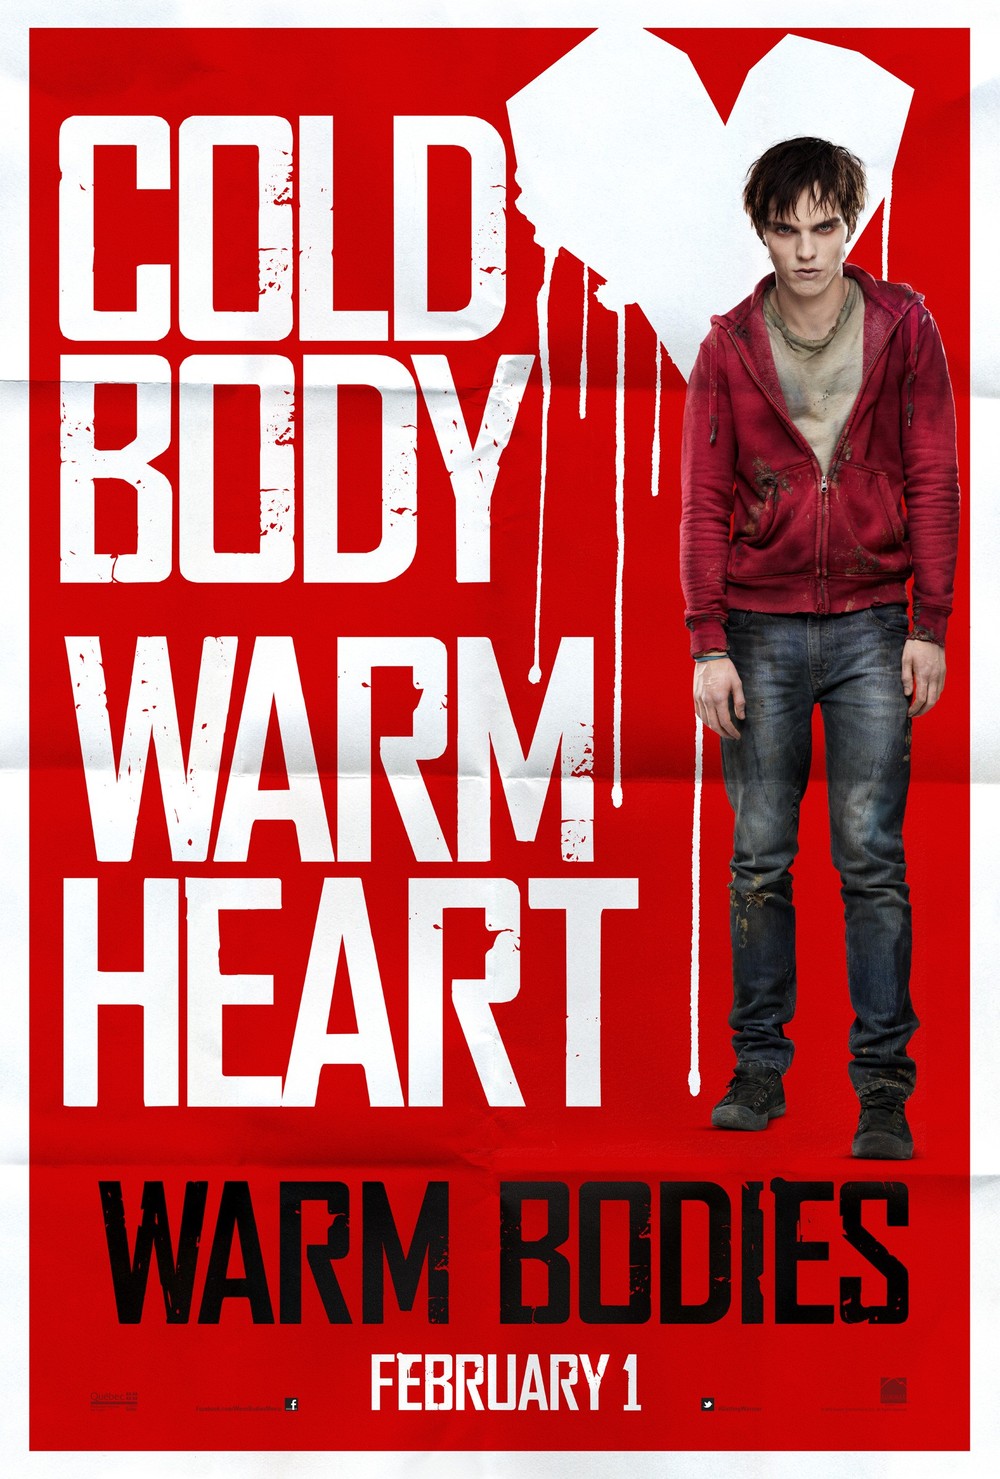 2013 Warm Bodies